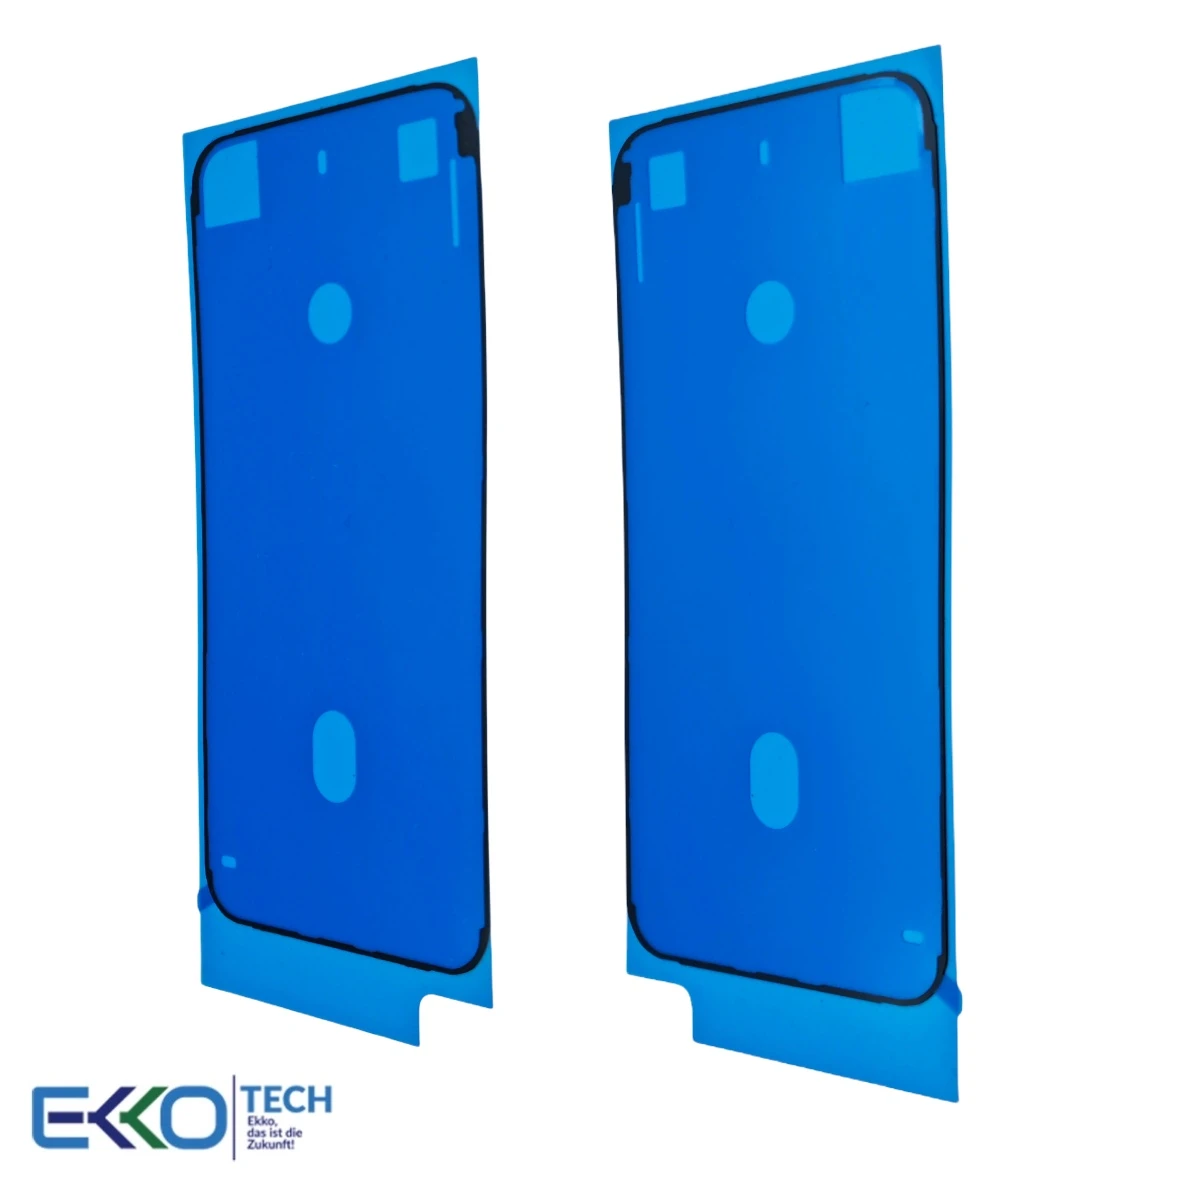 LCD Dichtung Klebestreifen (Adhesive Tape) für iPhone 8 / SE 2020